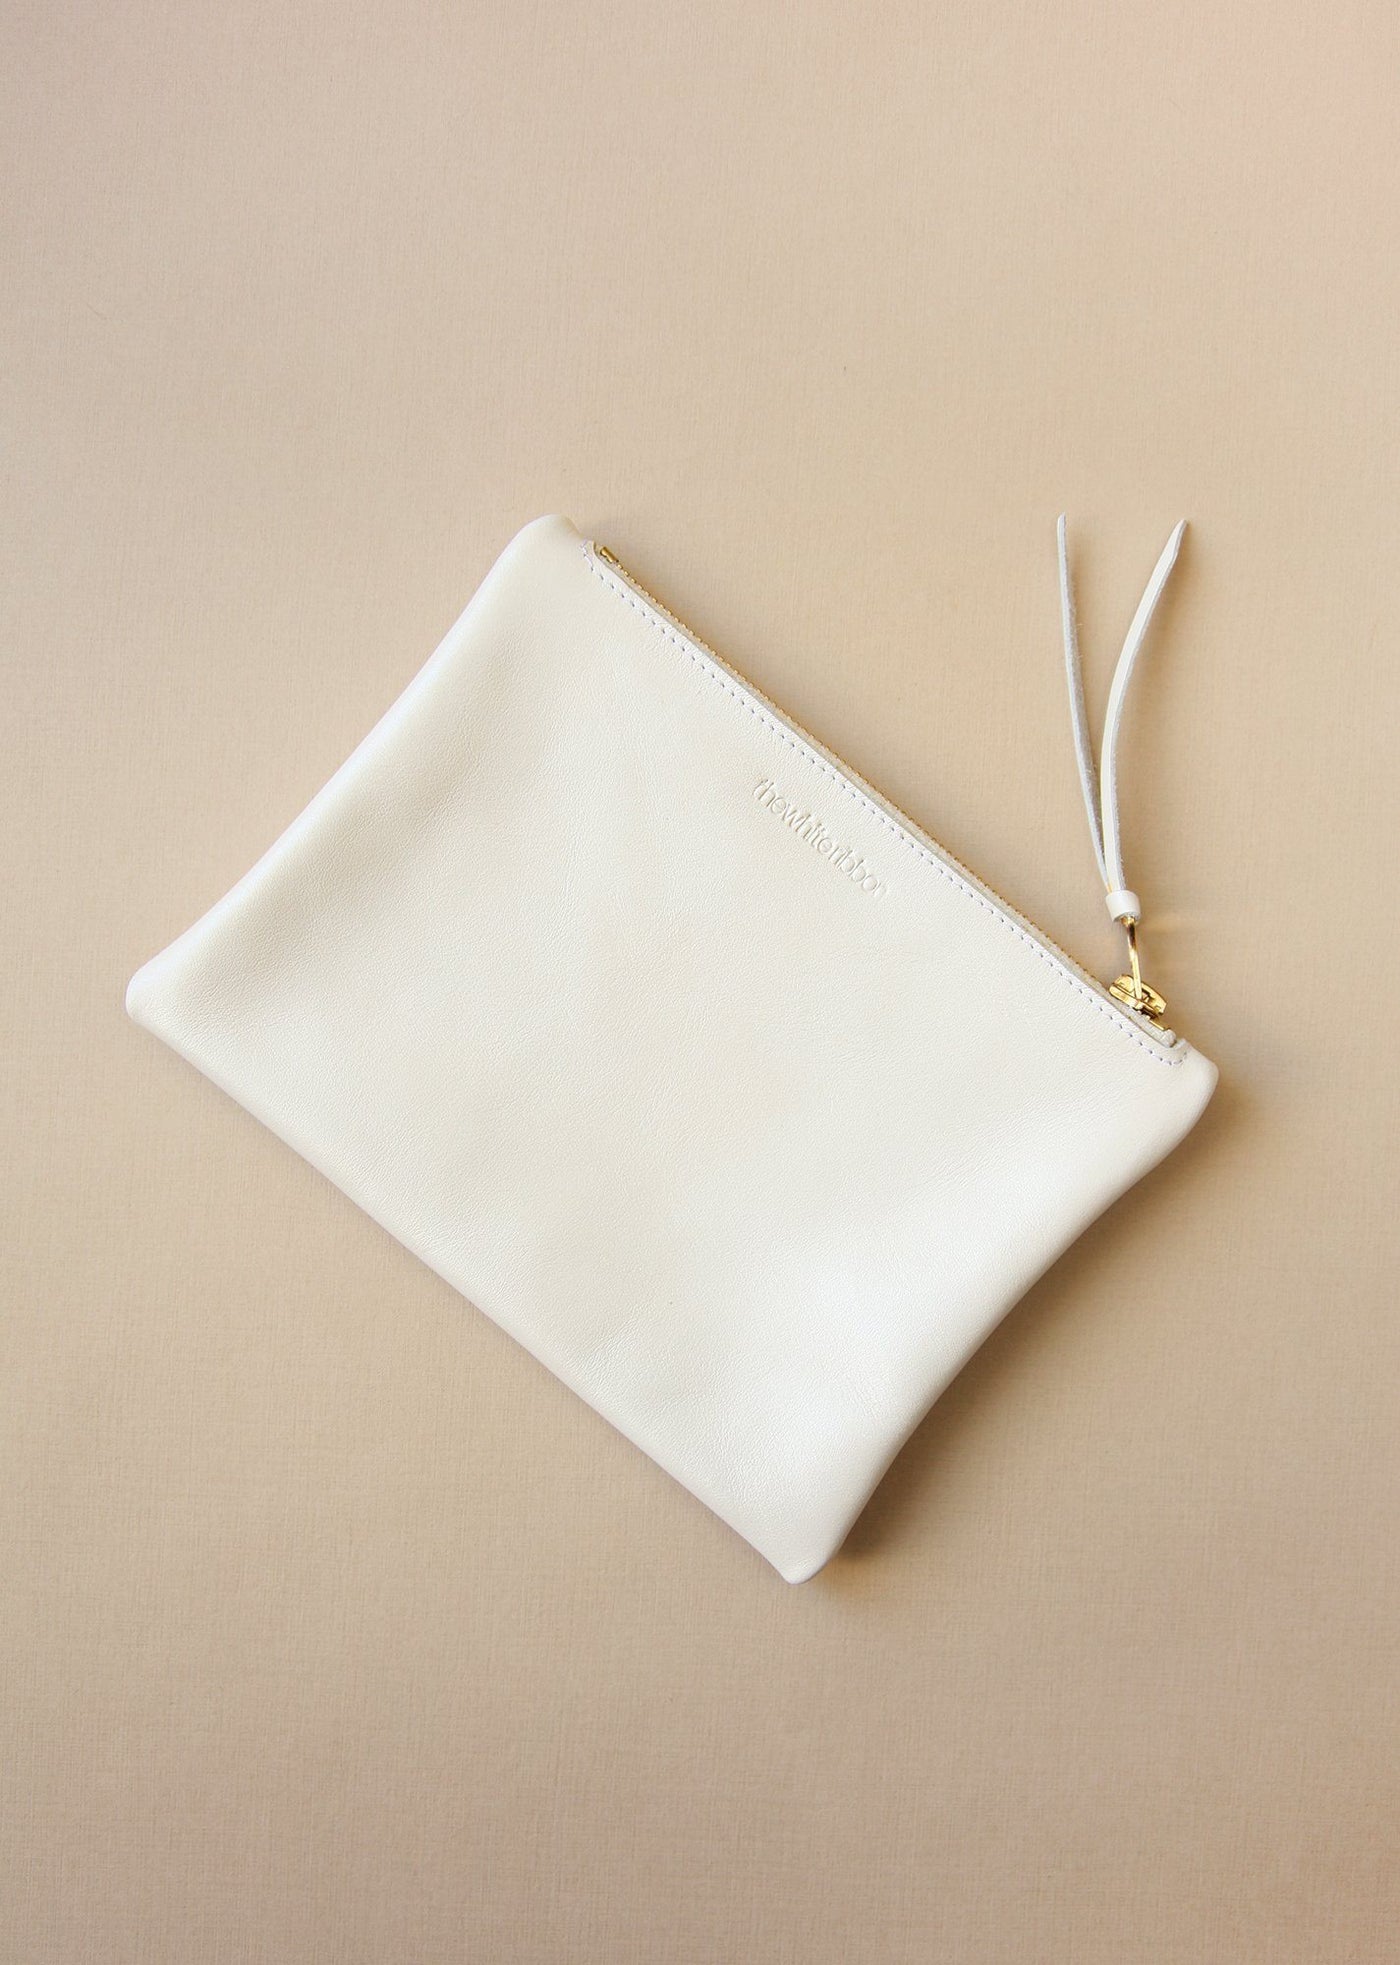 Leder Clutch aus nachhaltiger Produktion für die Hochzeit in Pearl Ivory